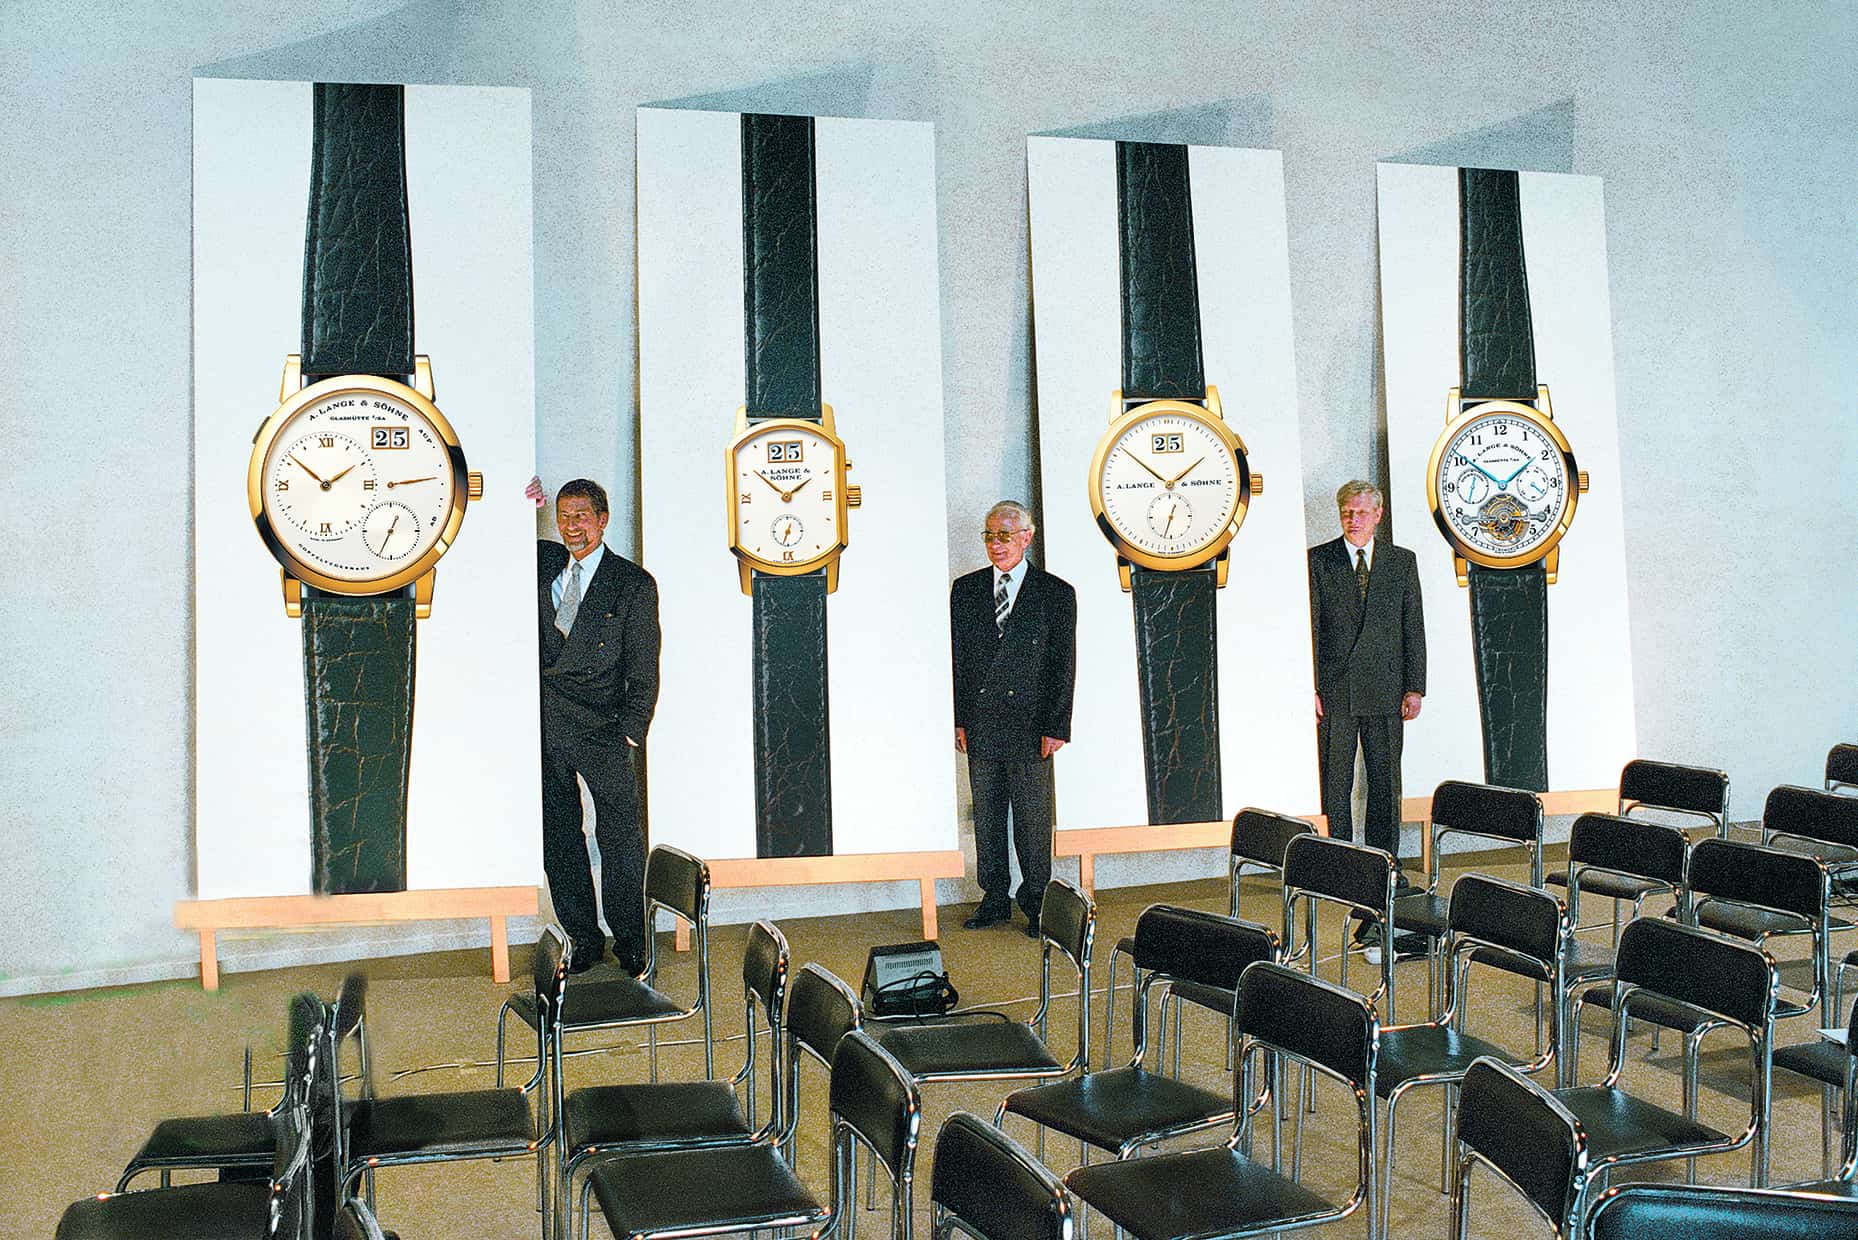 Am 24. Oktober 1994 präsentieren Günter Blümlein, Walter Lange und Hartmut Knothe die erste Neuzeit-Kollektion von A. Lange & Söhne